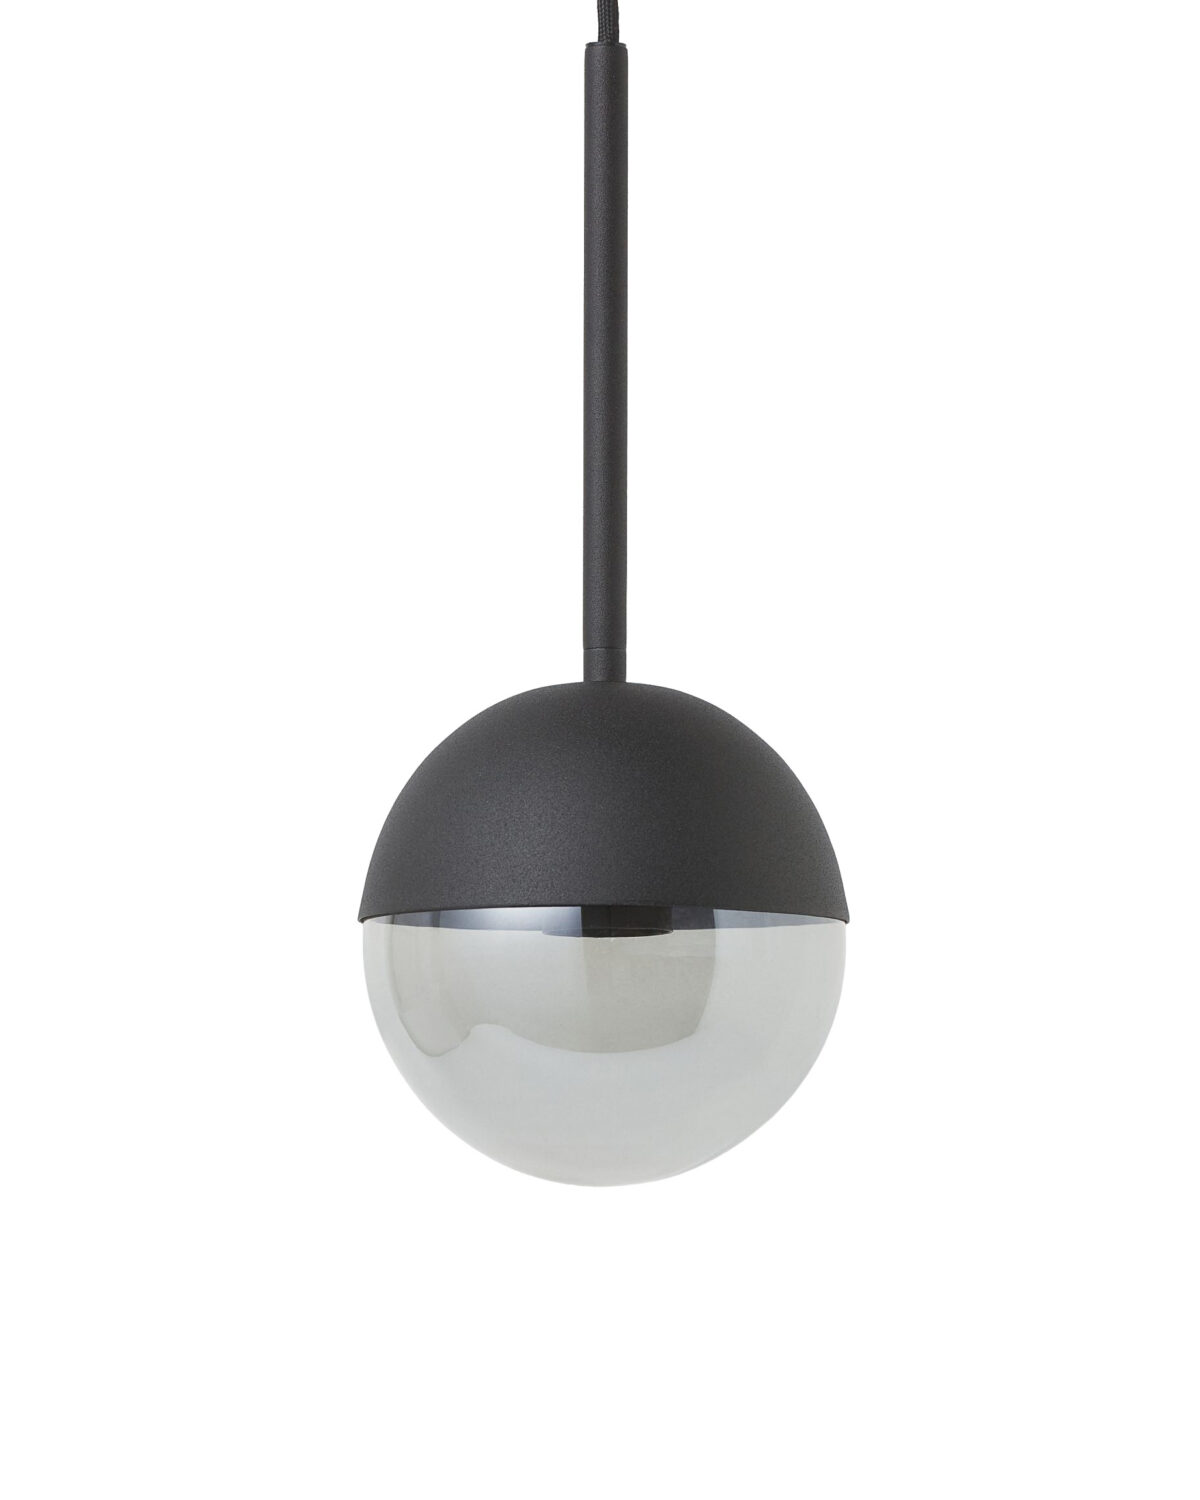 Чёрный подвесной светильник “Уорд” с дымчатым плафоном